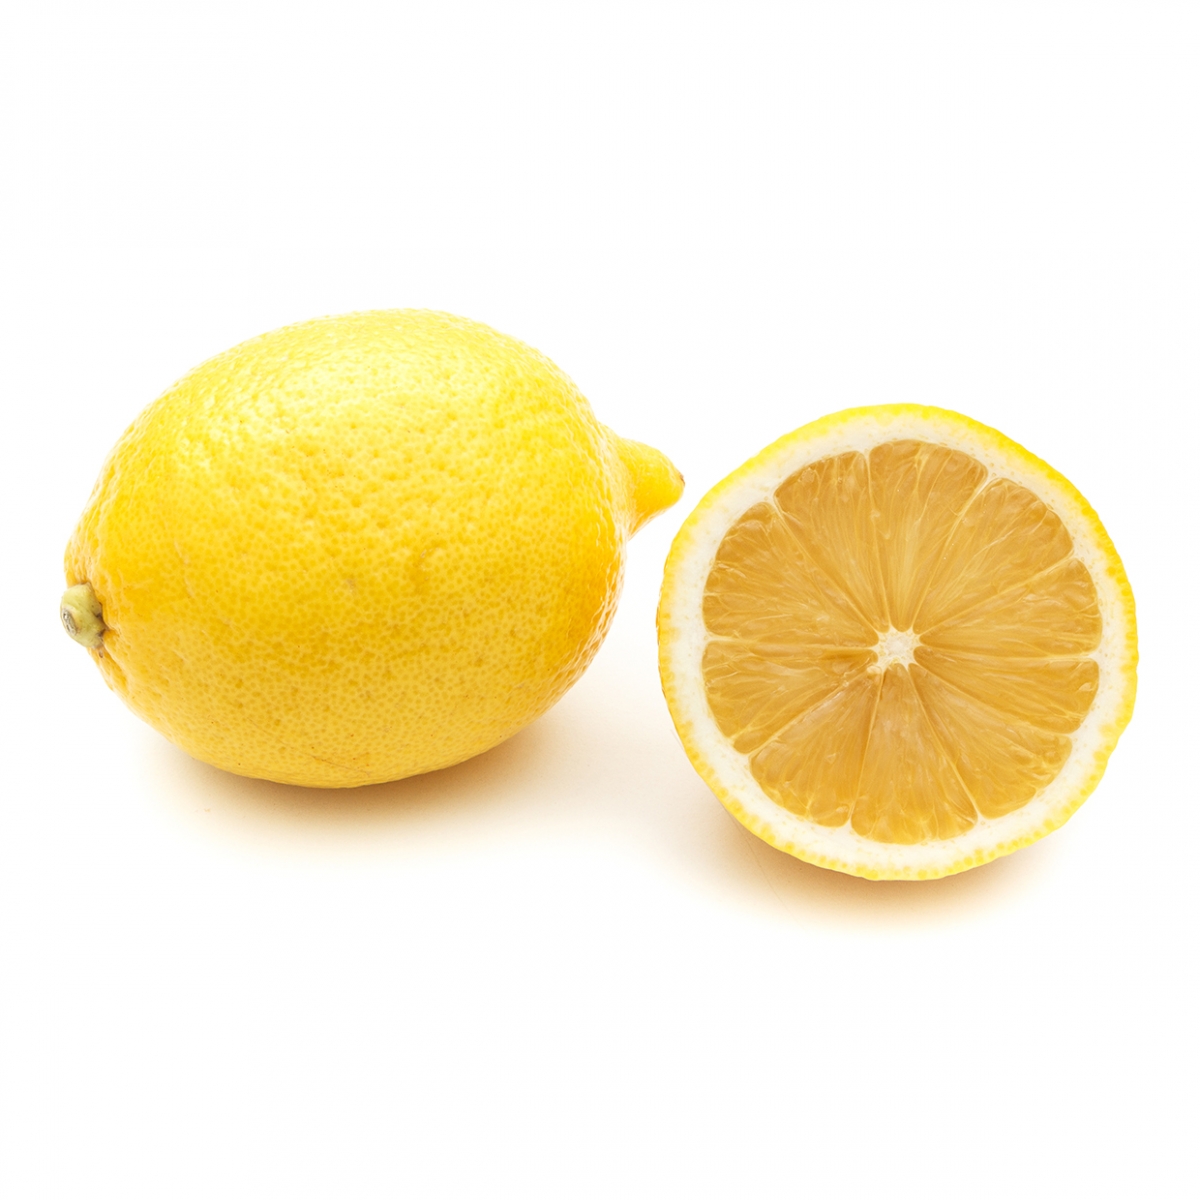 Imagen en la que se ve un limón entero y medio delante de él